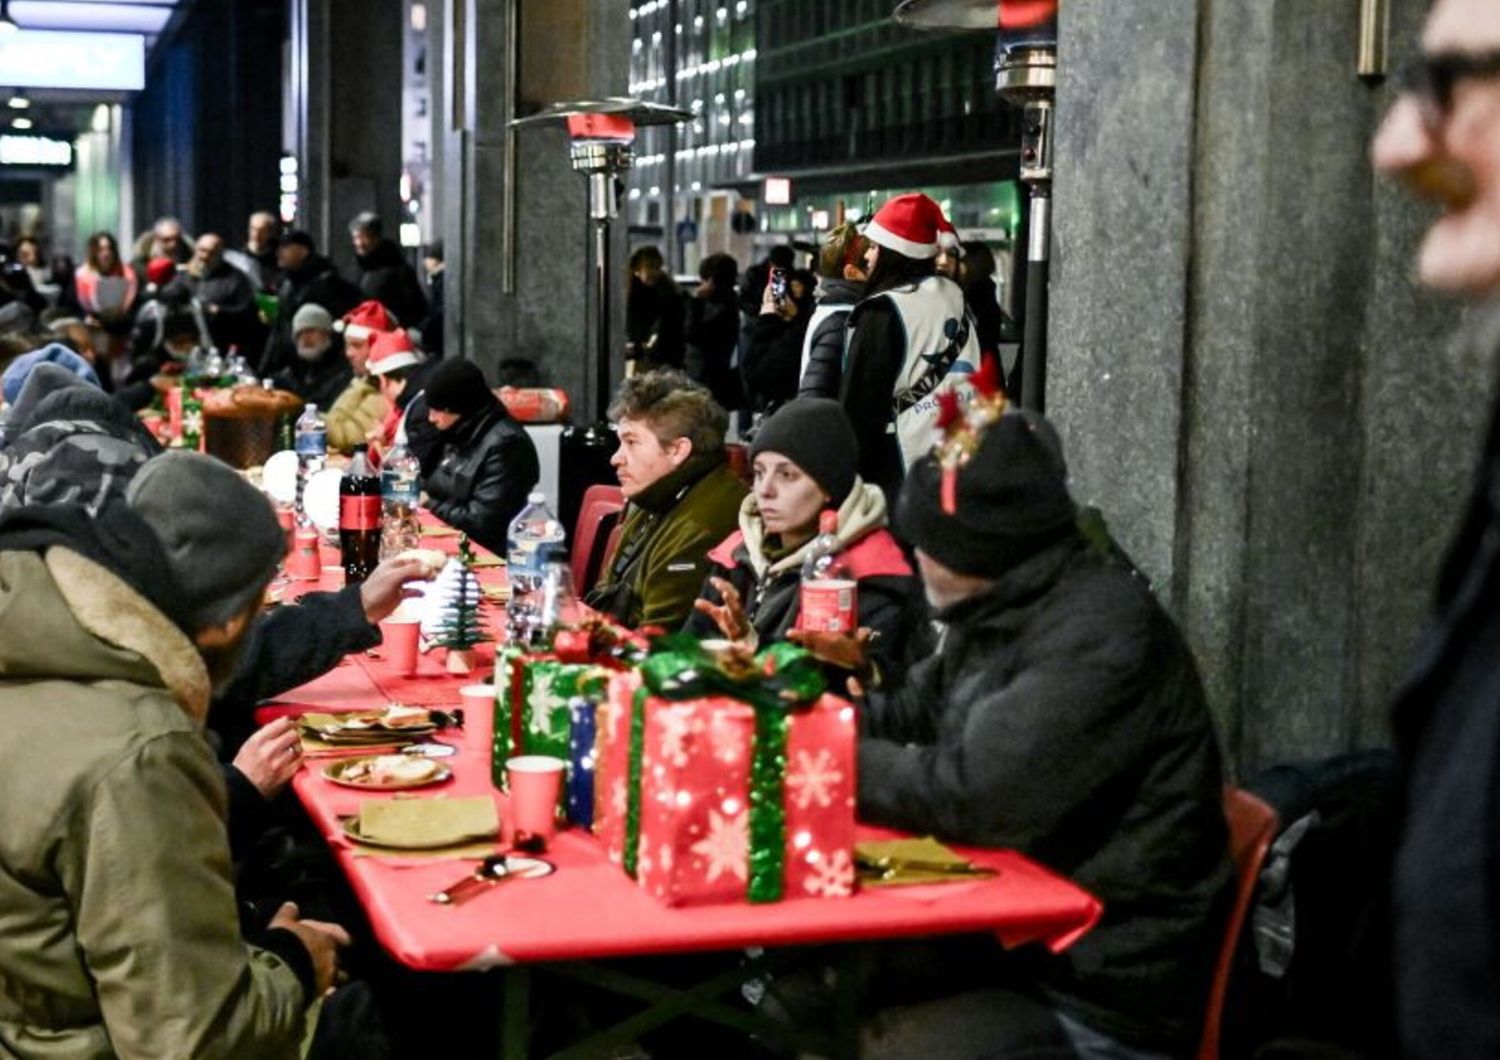 La cena natalizia per i clochard organizzata a Milano lo scorso 21 dicembre dalla fondazione Progetto Arca sotto i portici di Corso Europa